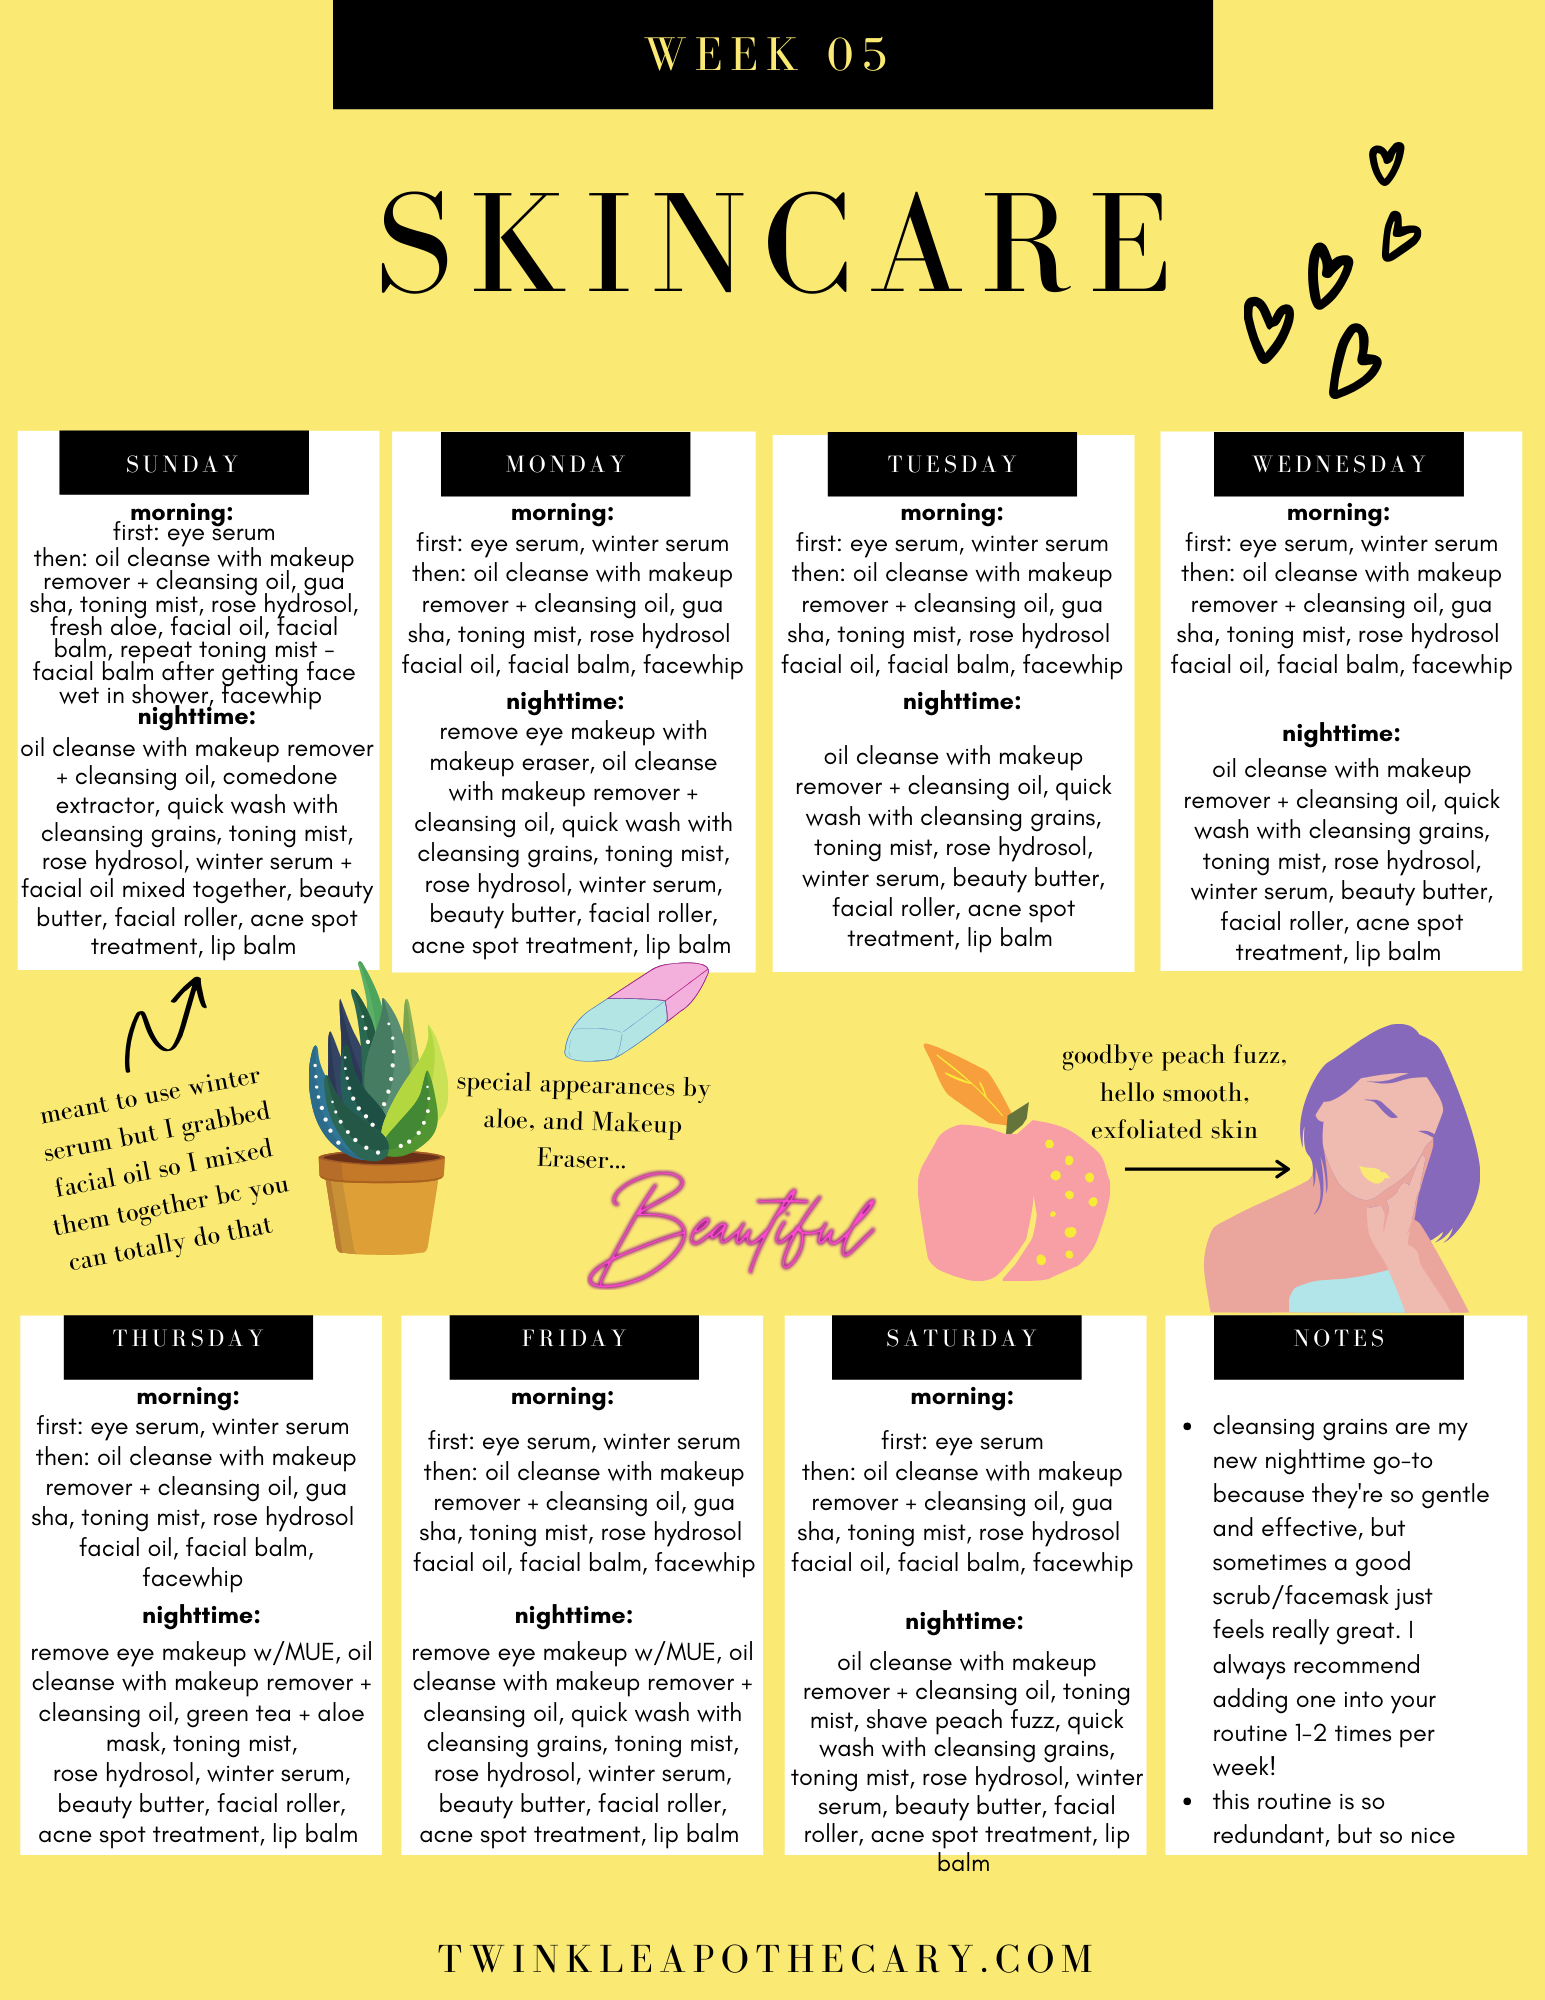 My Skincare Schedule - Week 5